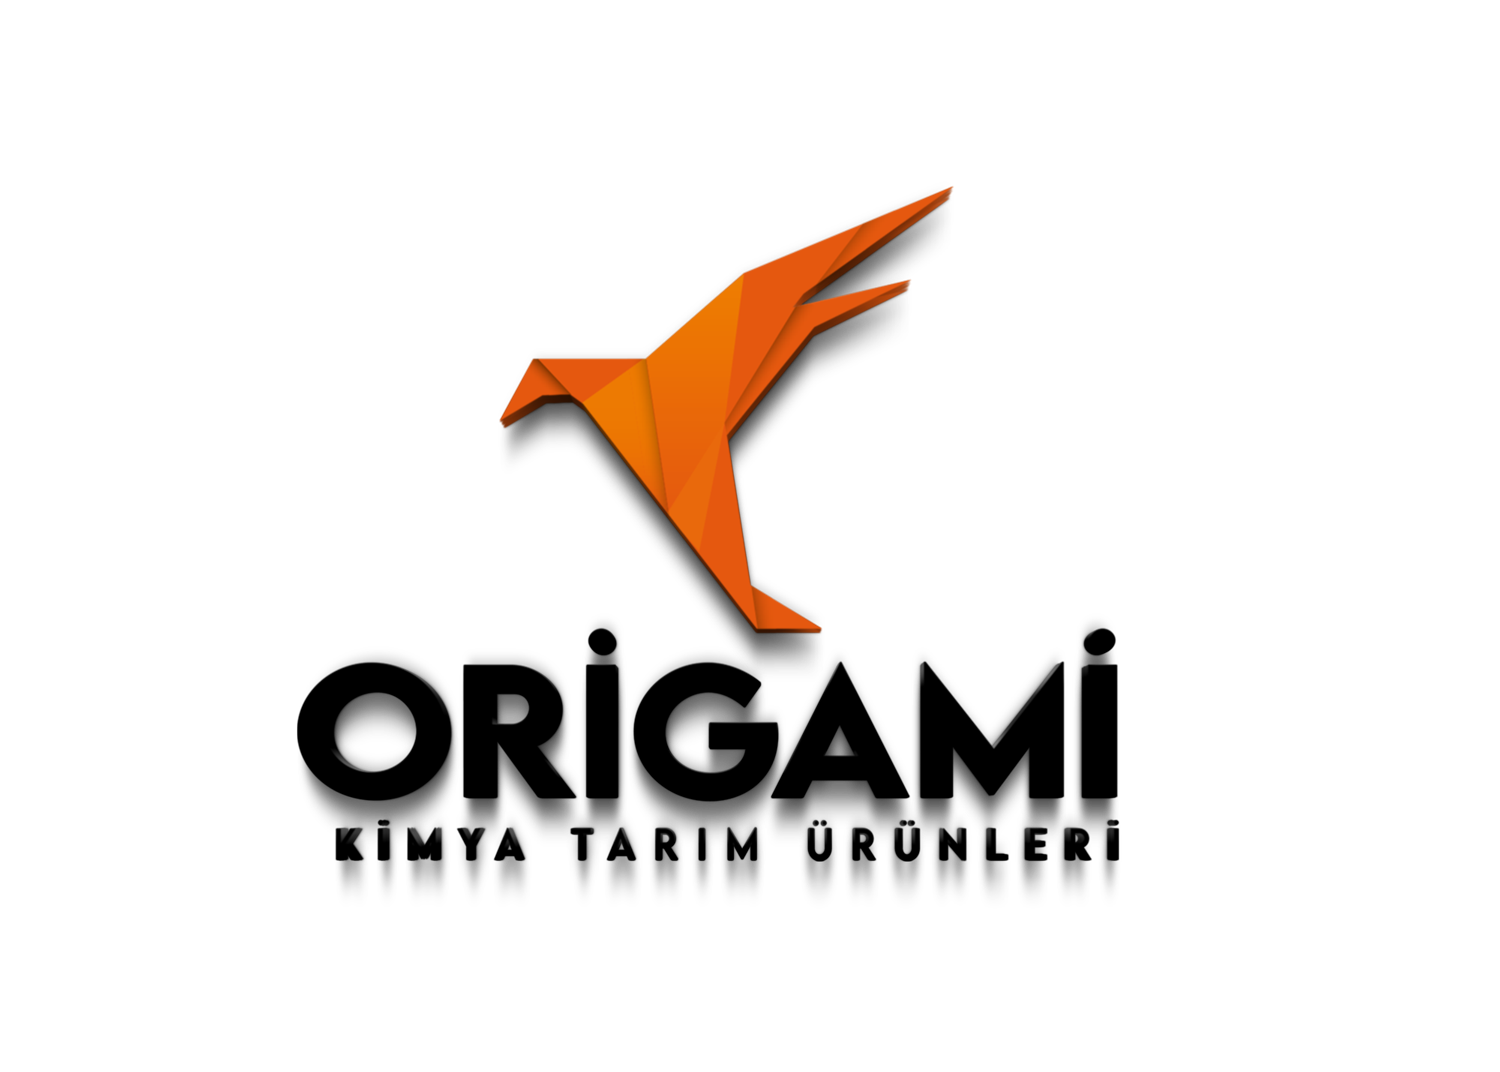 Origami Kimya Tarım Ürünleri Ltd Şti